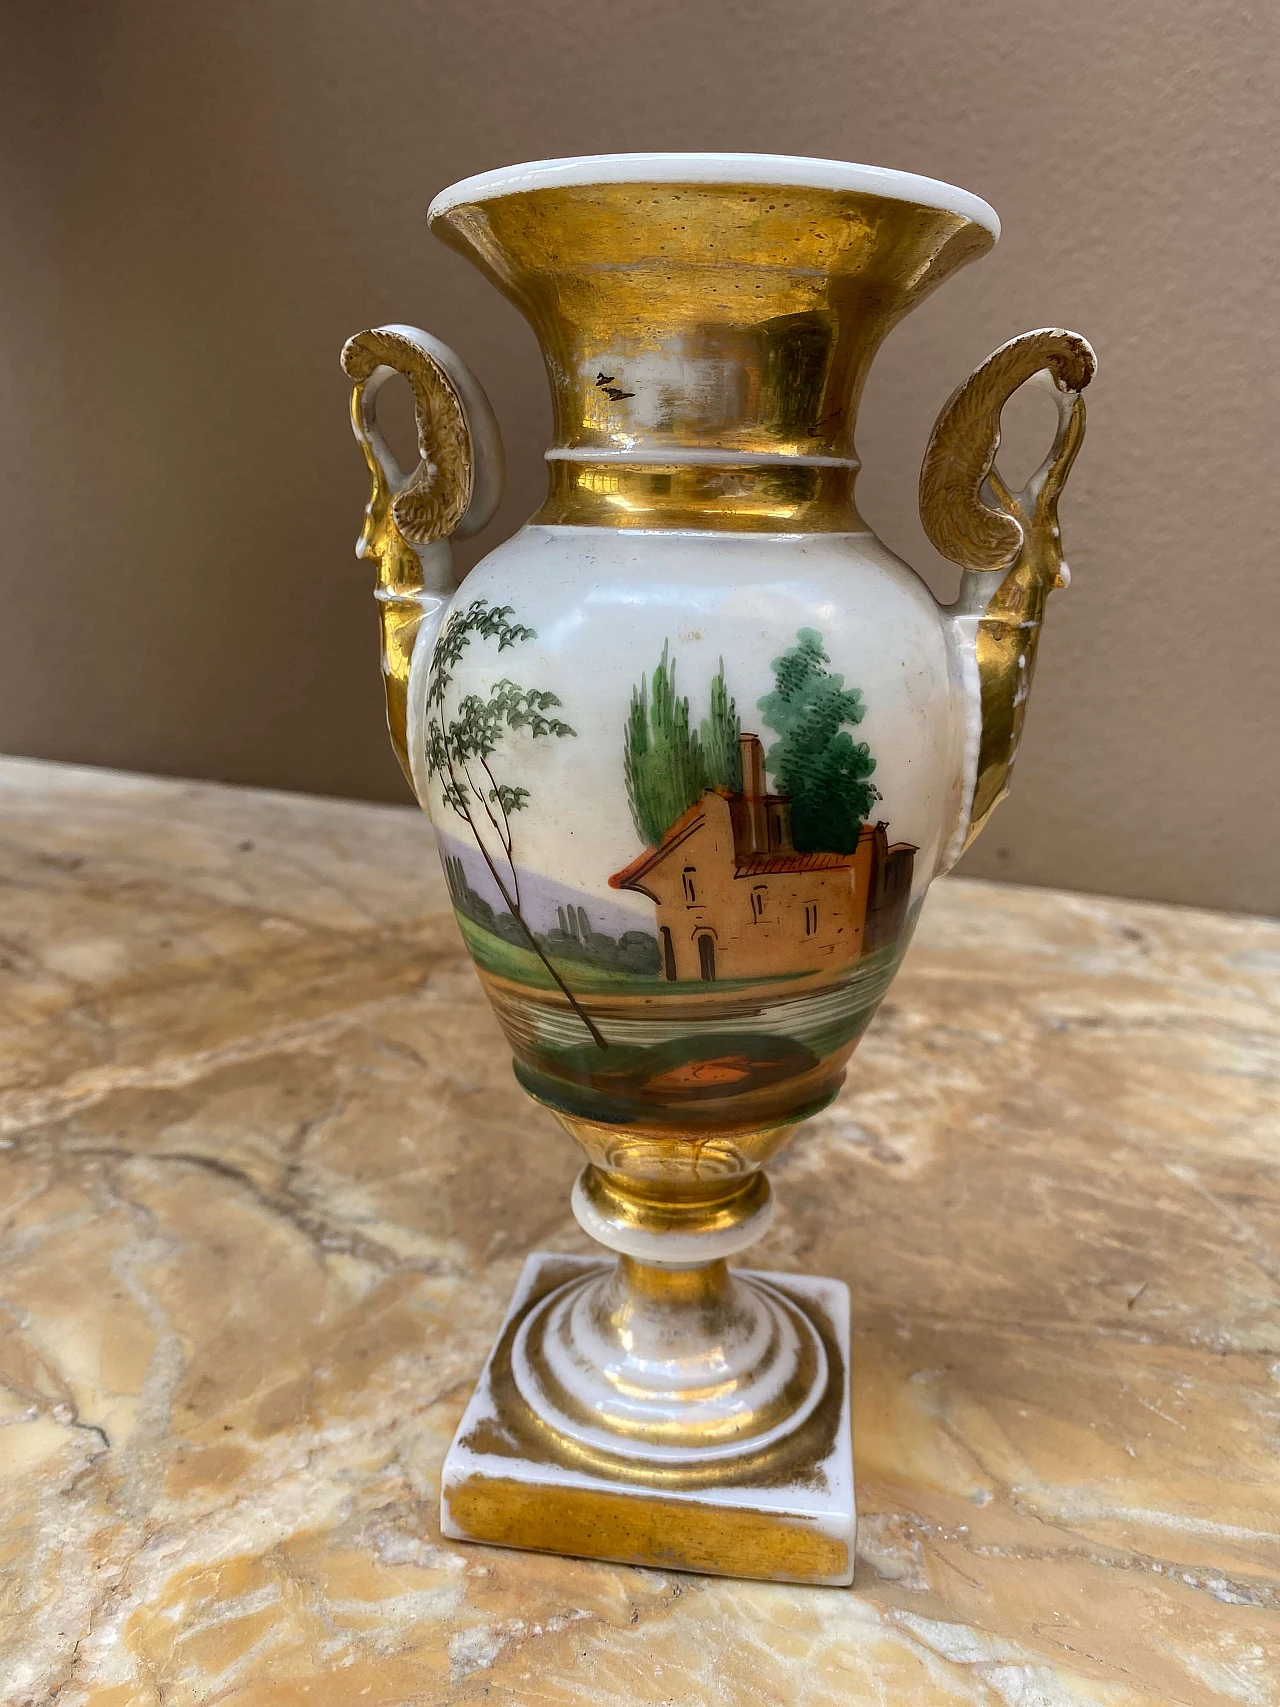 Painted Neapolitan ceramic vase, 19th century 1253723